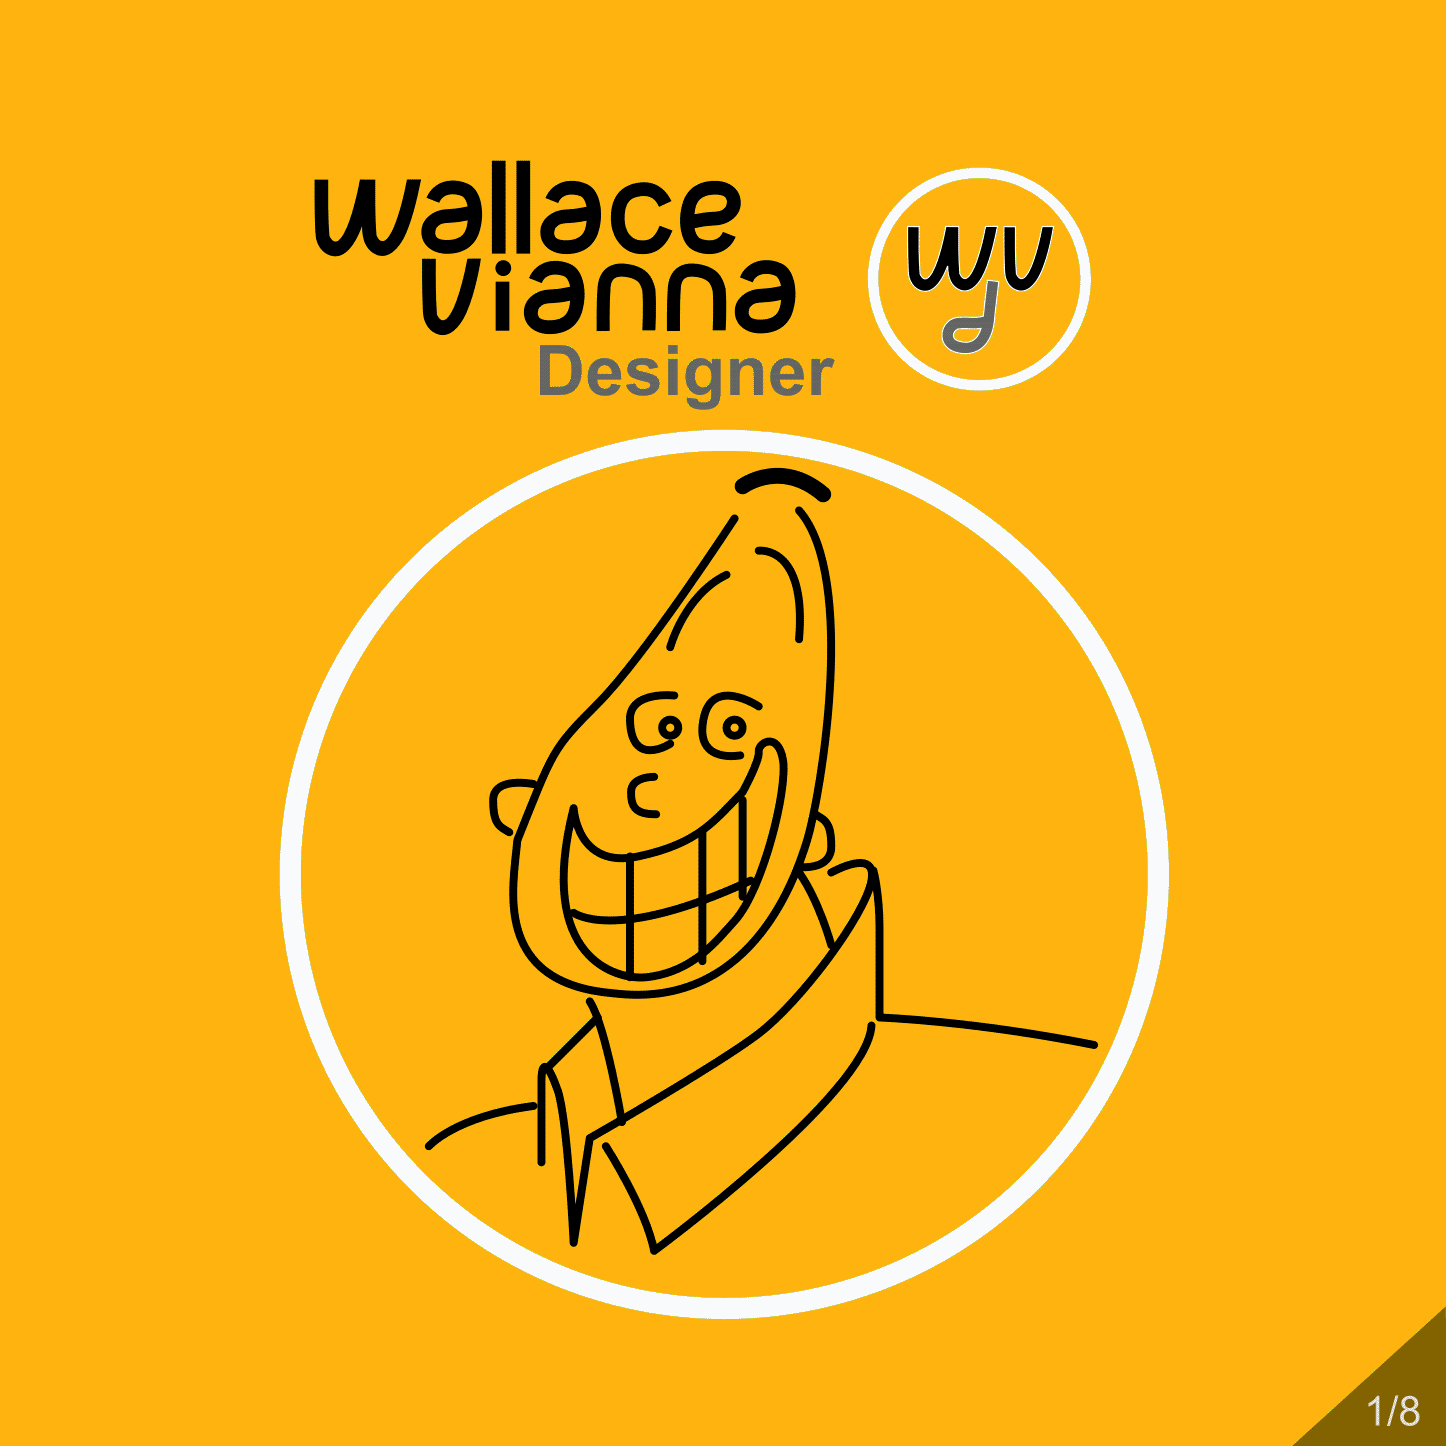 apresentação-wallace-vianna-designer-(quadrada)